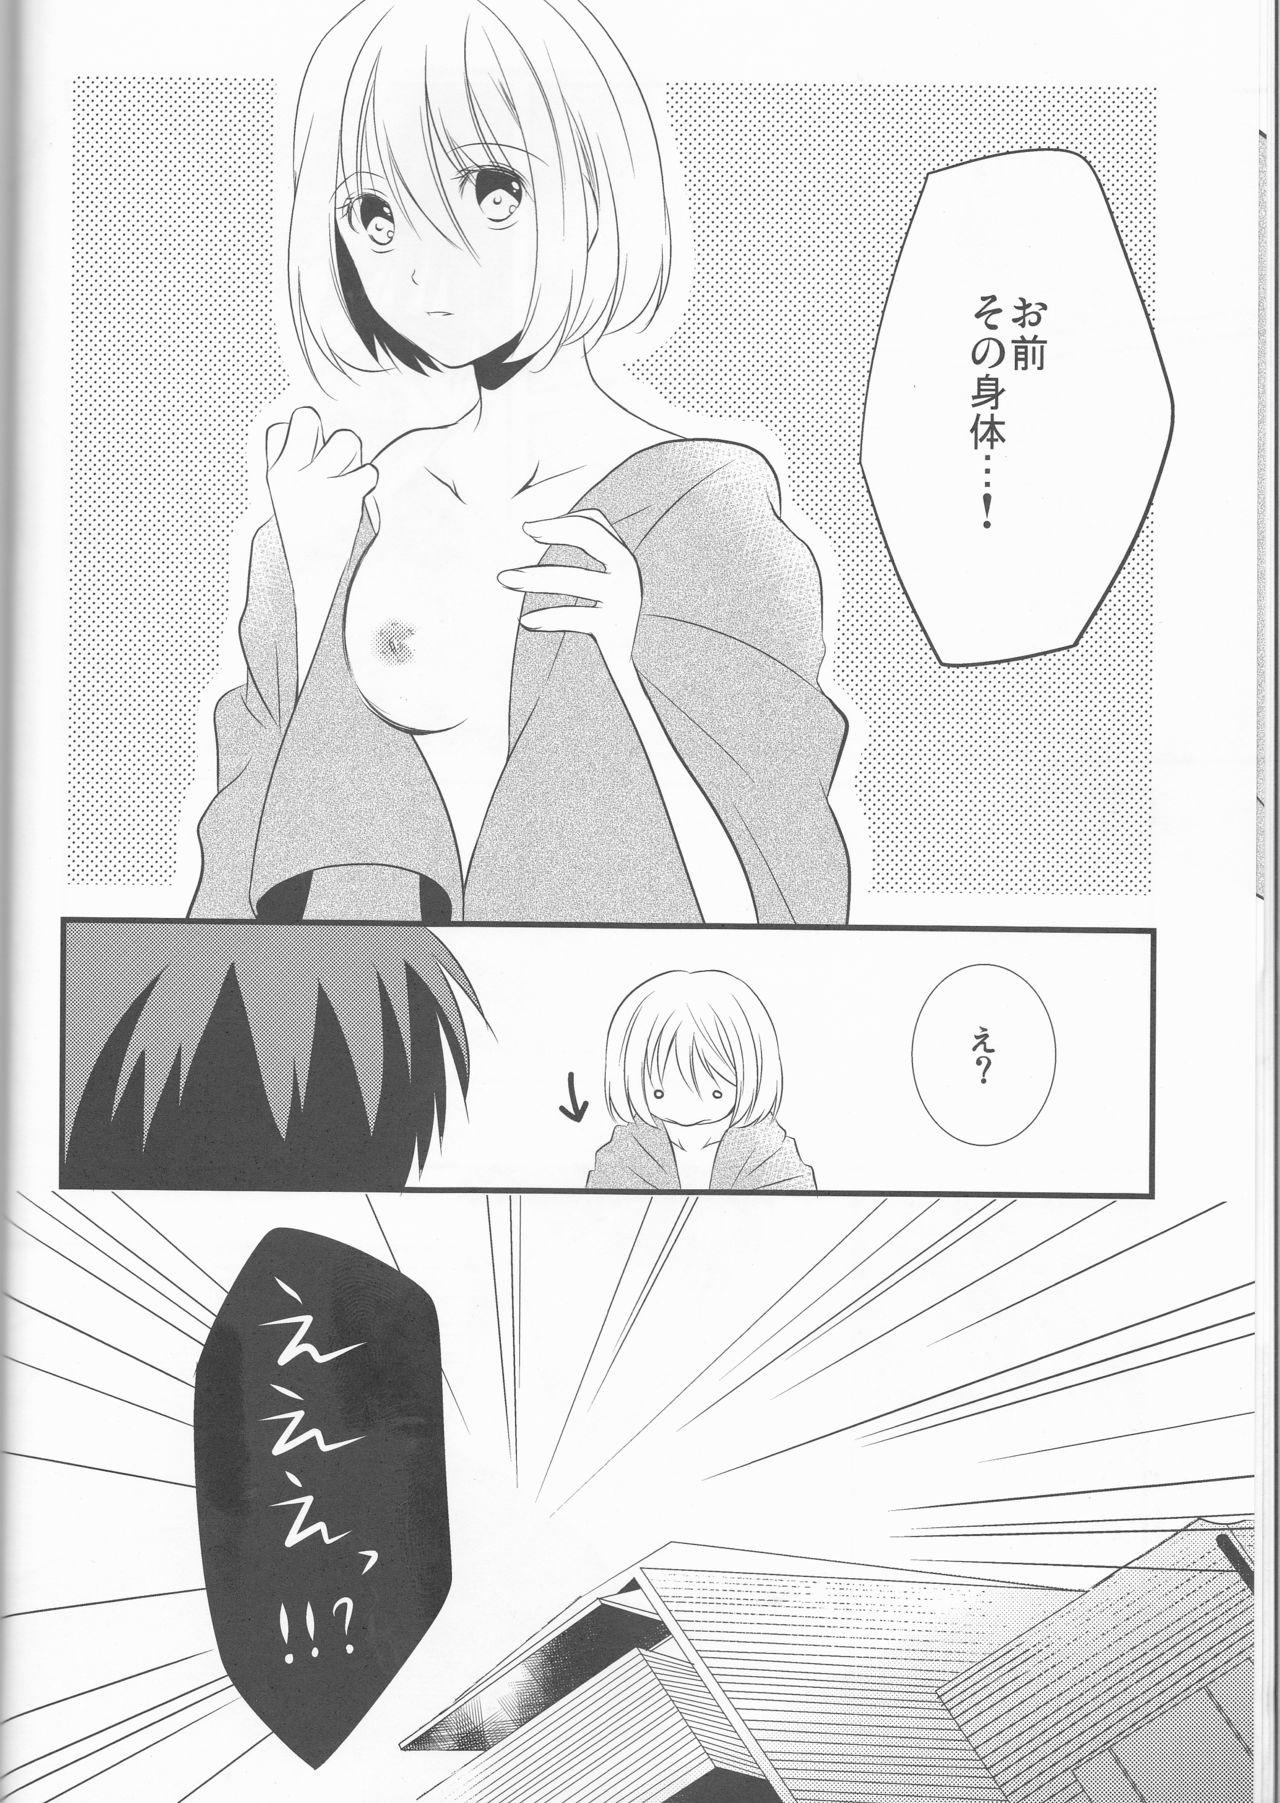 Small [ noa( noa)] Natsu no ma boroshi(Kuroko no Basuke))incomplete - Kuroko no basuke Blow - Page 8